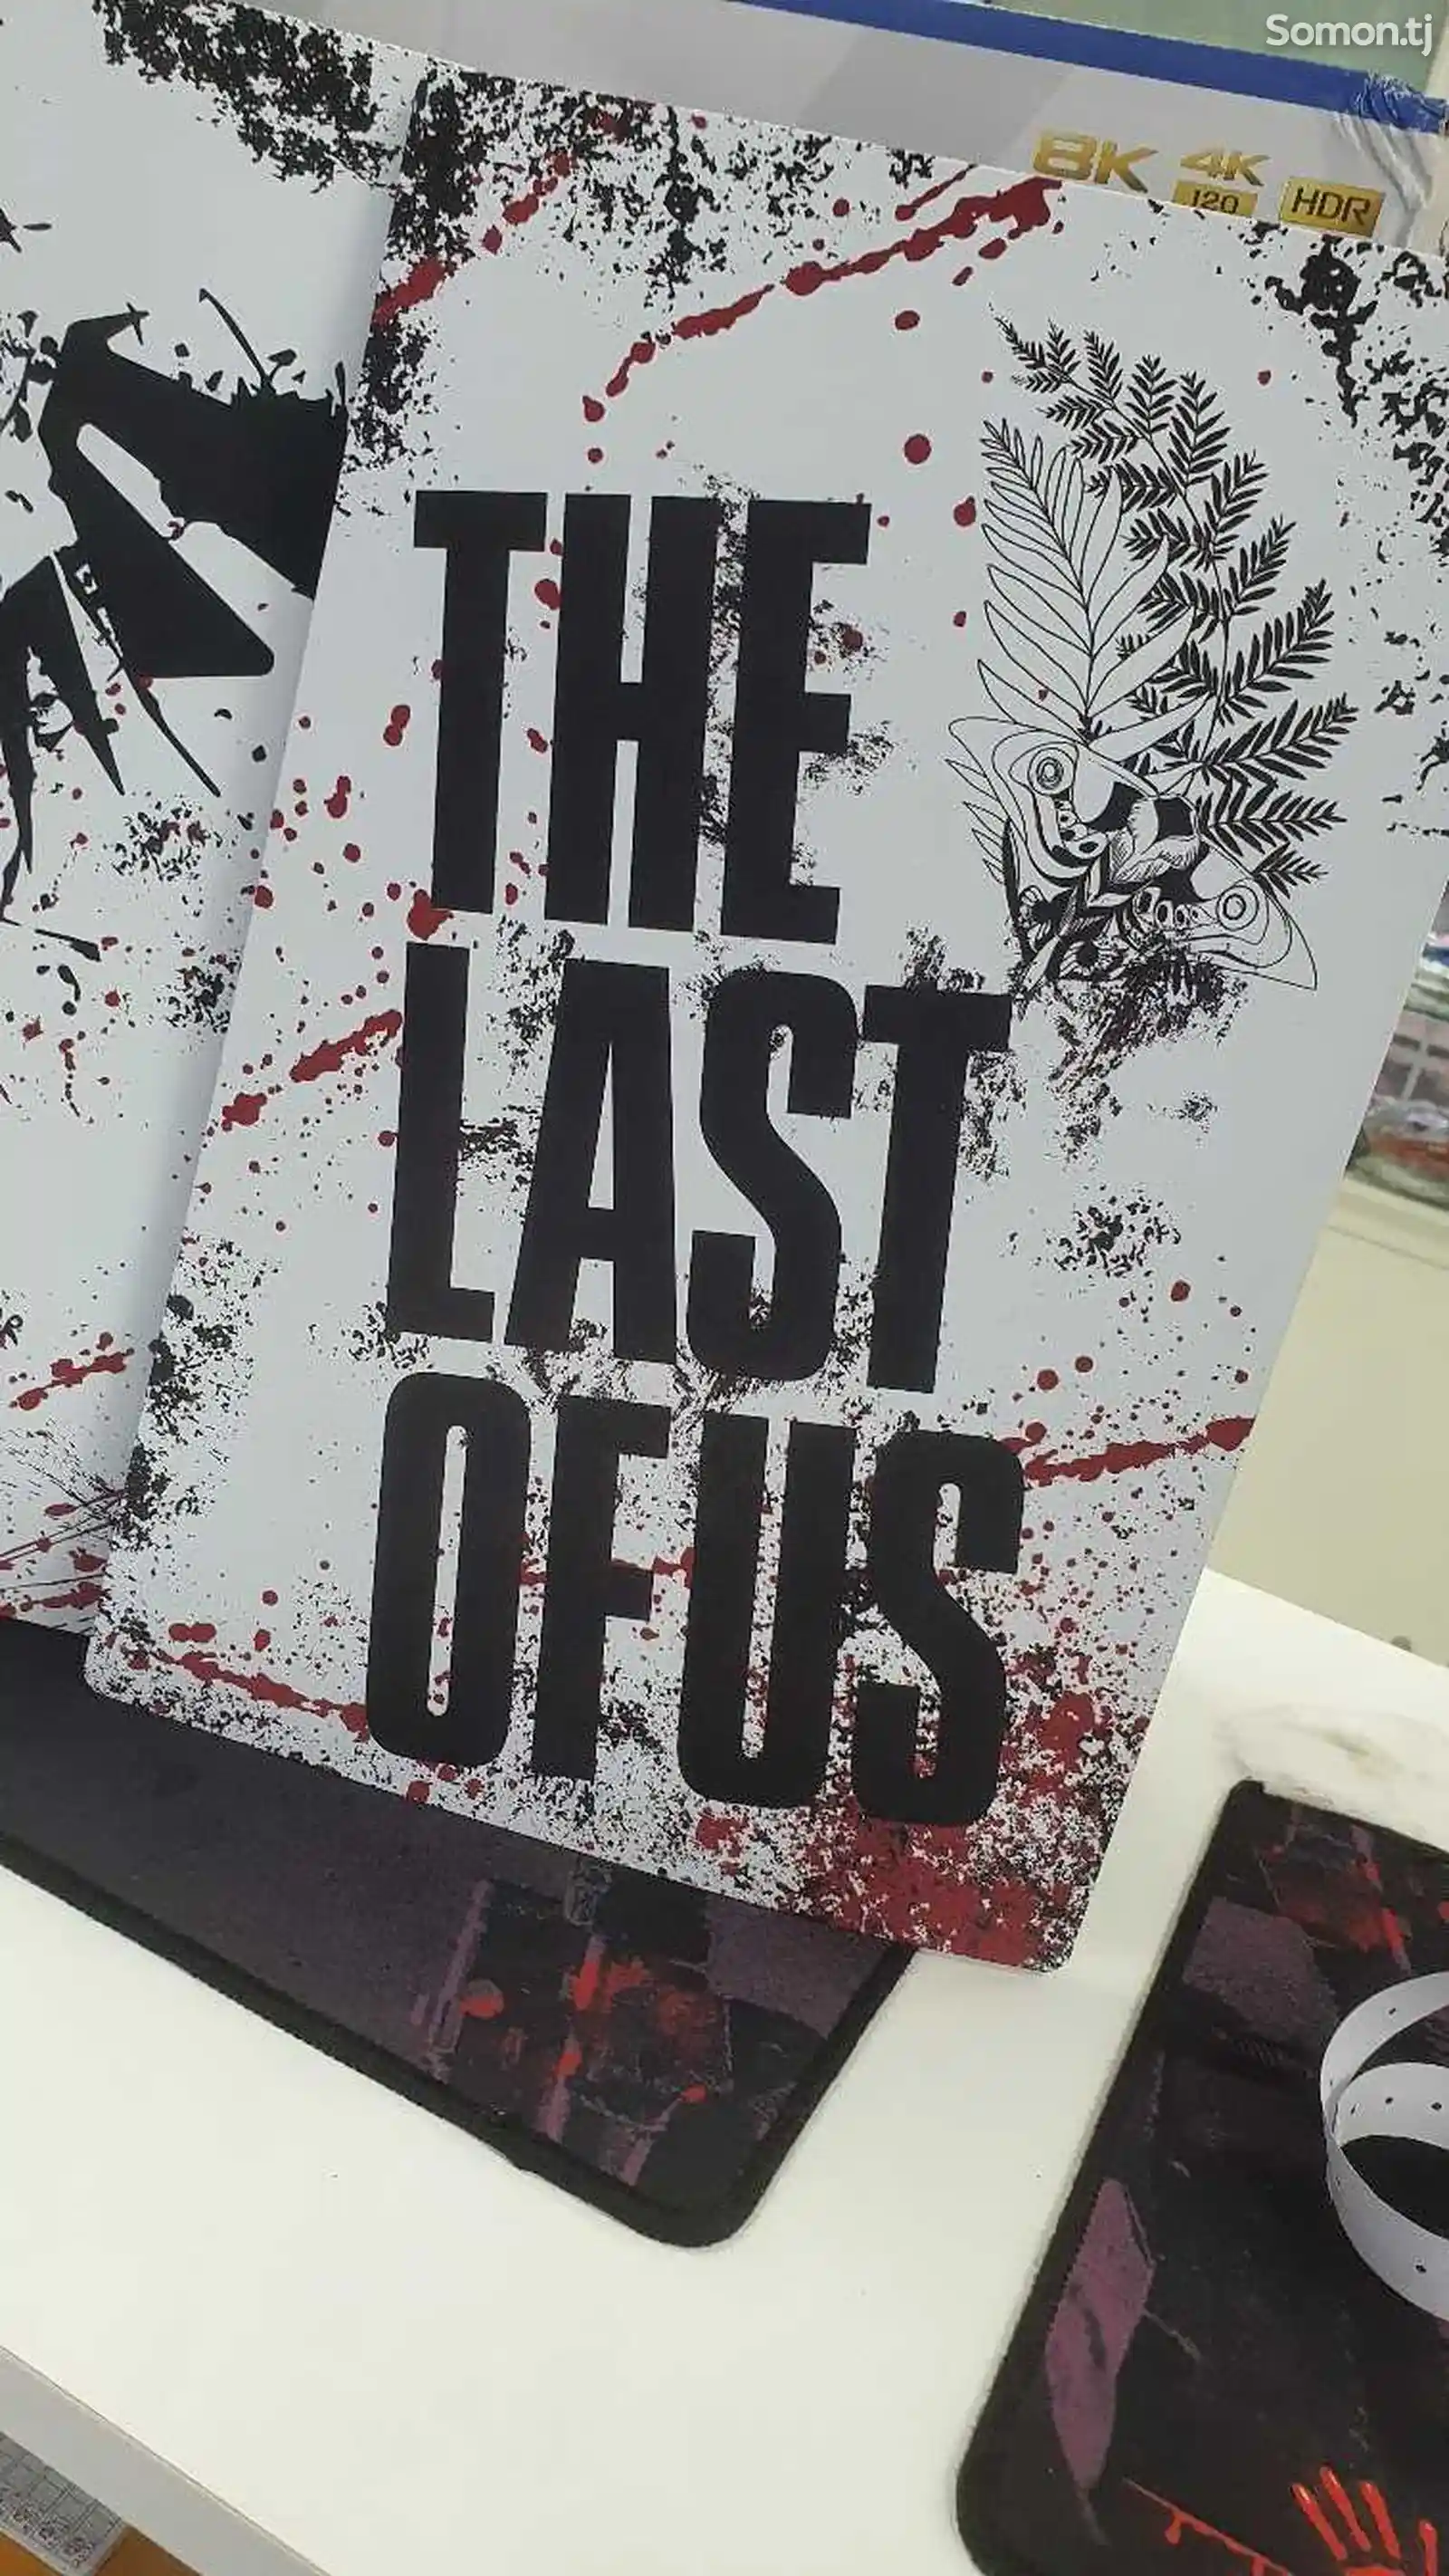 Раскрашенные панели для консоли PS5 в стиле игр серии The Last Of Us-4